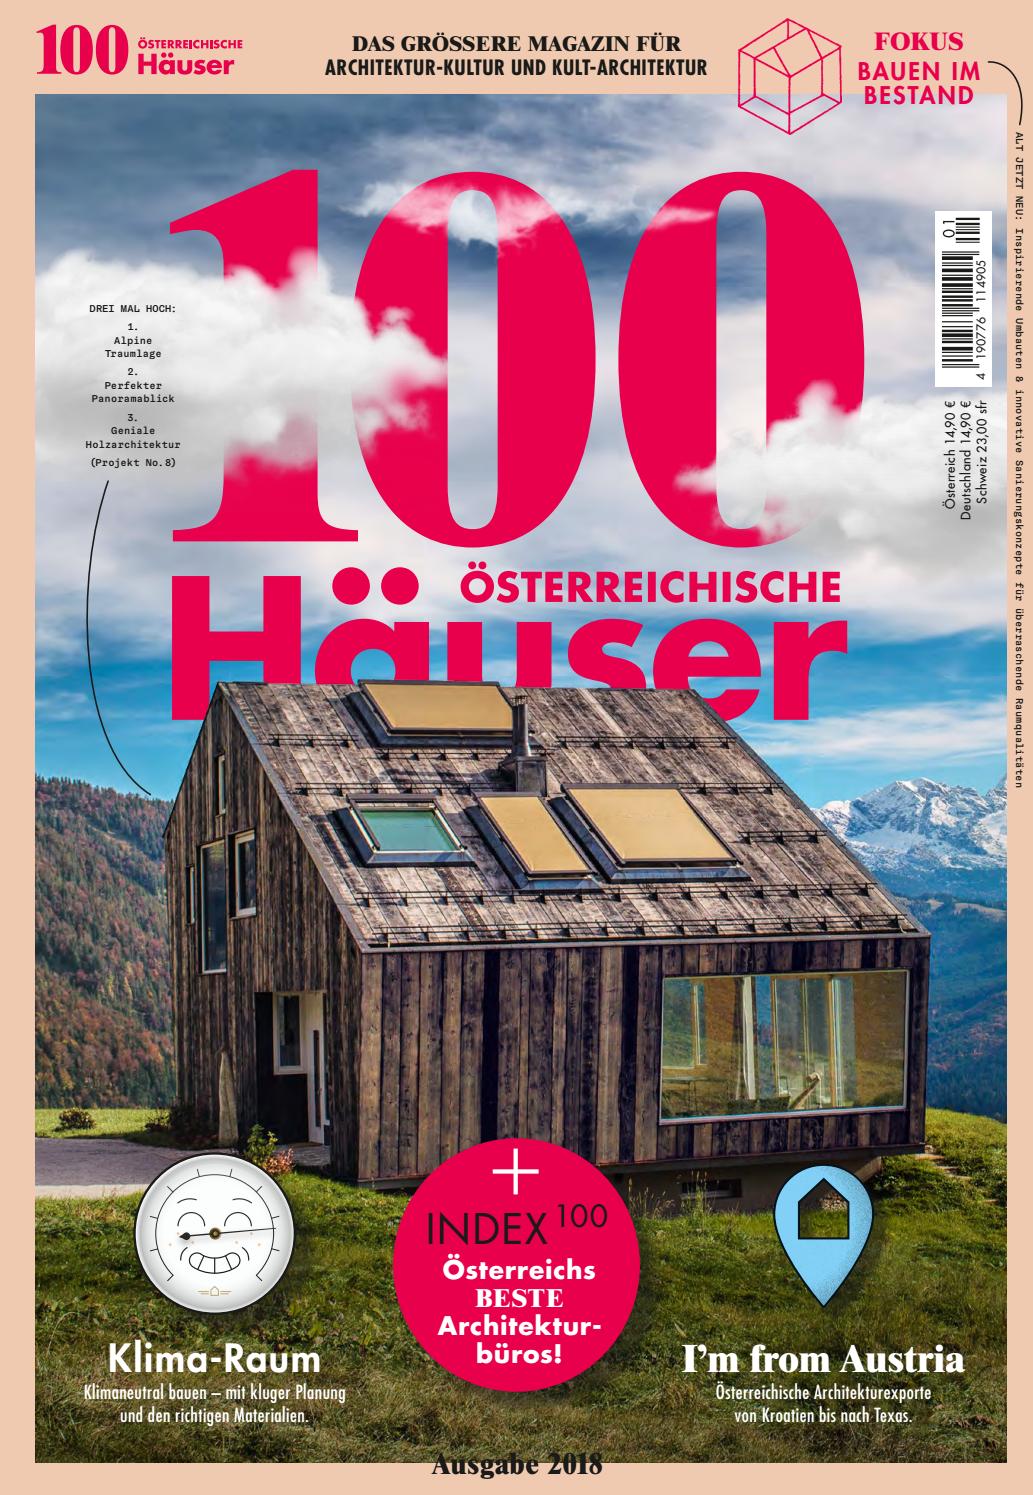 Holzterrassen Ideen Frisch 100 österreichische Häuser 2018 by 100 Deutsche Häuser issuu